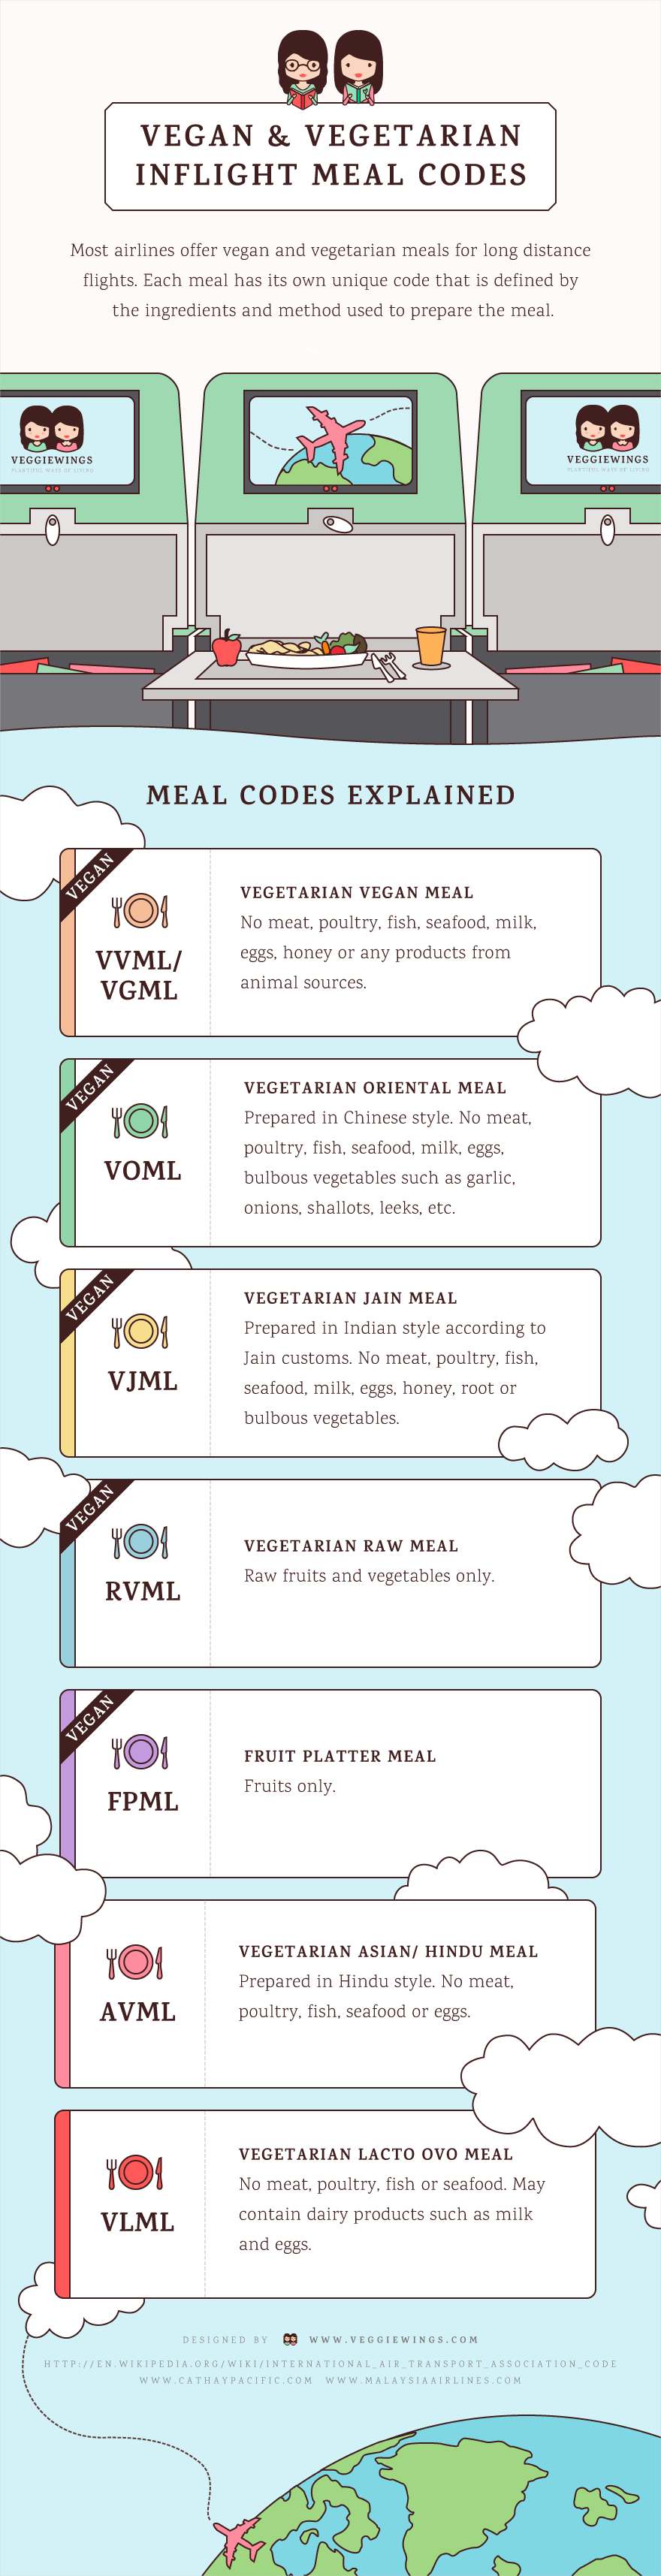 vegan meal codes